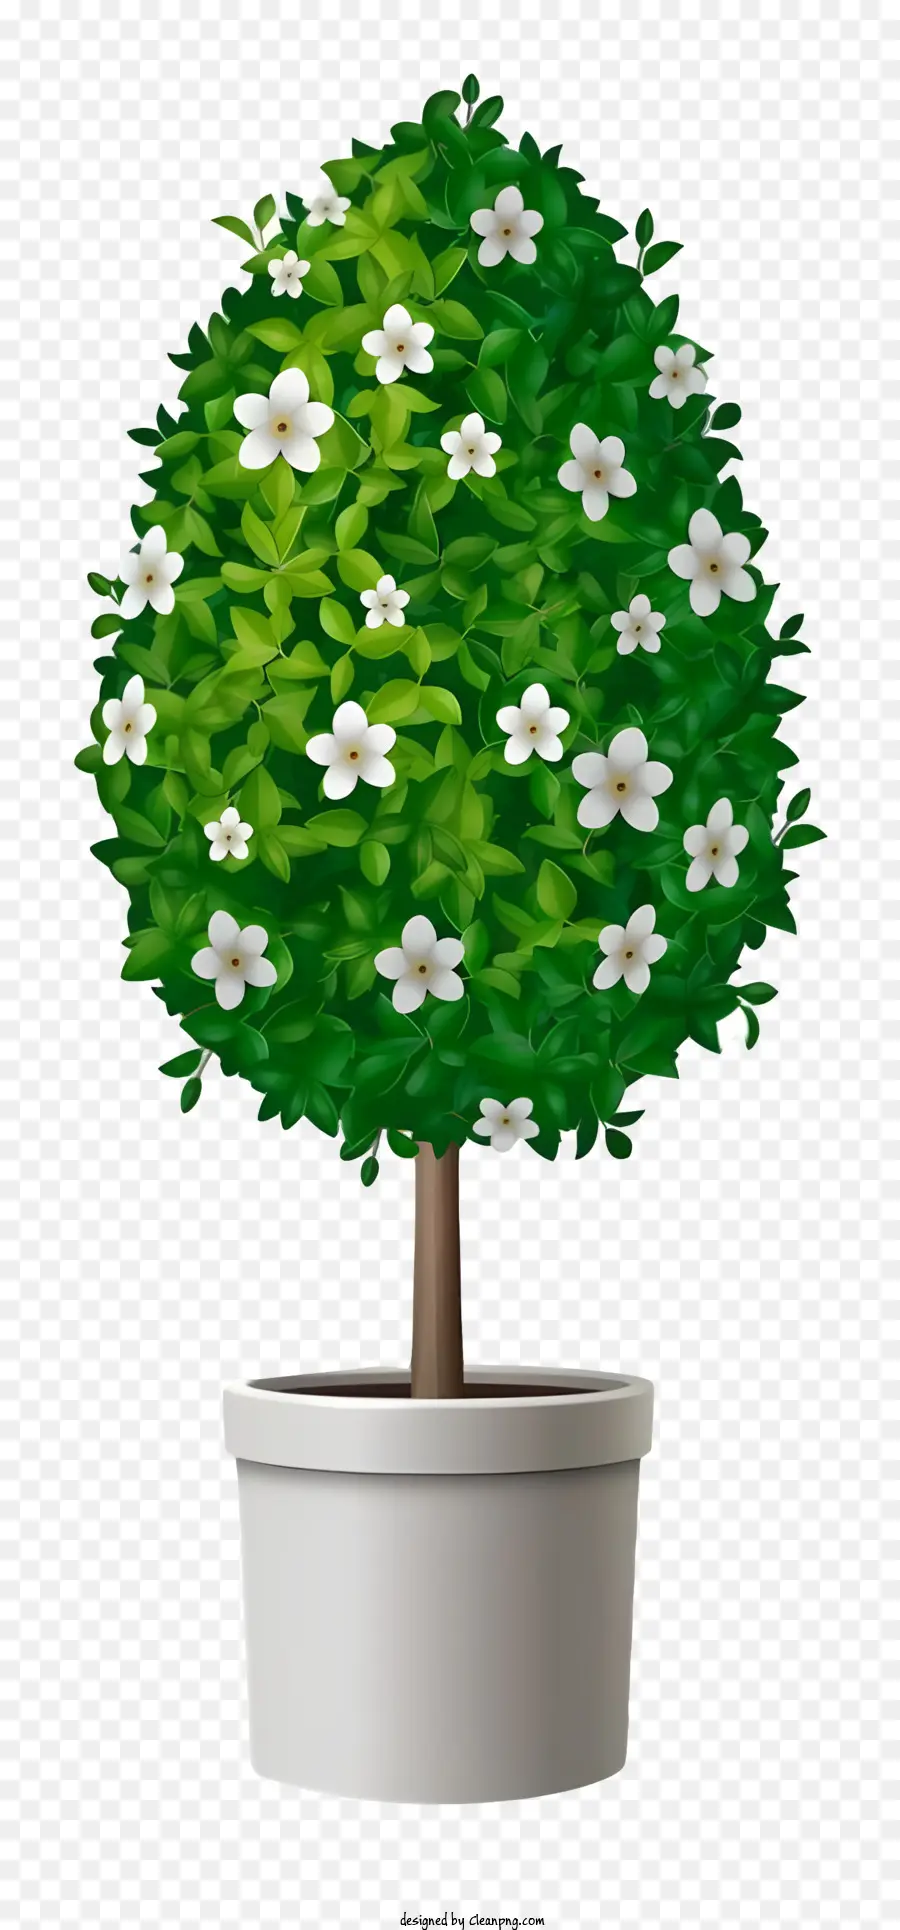 pianta in vaso foglie di superficie scura della pianta folta pianta - Piccola pianta in vaso con fiori bianchi